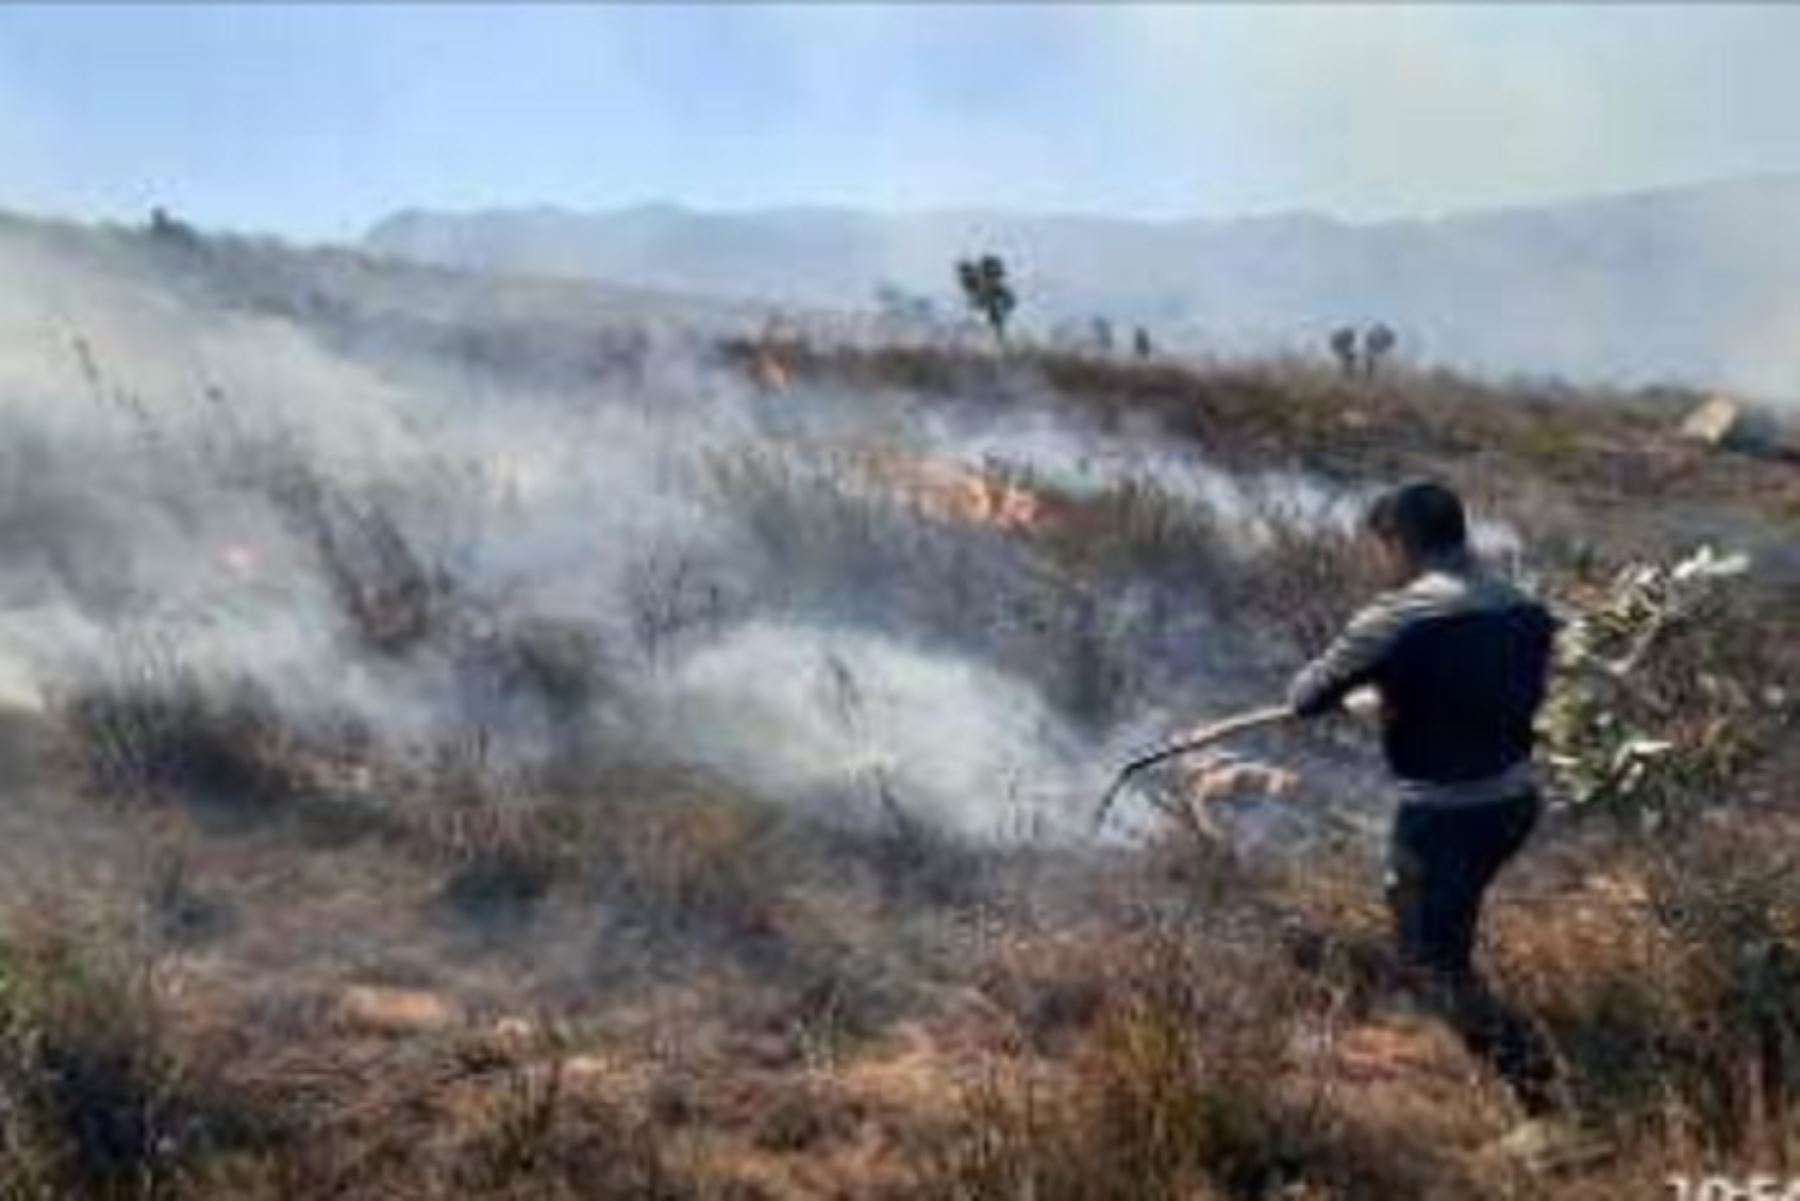 El incendio forestal que se viene registrando en la región Cajamarca, está afectado 50 hectáreas de cultivo y cobertura natural (eucalipto, frutales y pastizales), a 1 kilómetro de la localidad de Cushumalca y caserío La Laguna, del centro poblado de Huayllabamba, distrito de Pedro Gálvez, provincia de San Marcos, informó el Instituto Nacional de Defensa Civil (Indeci).